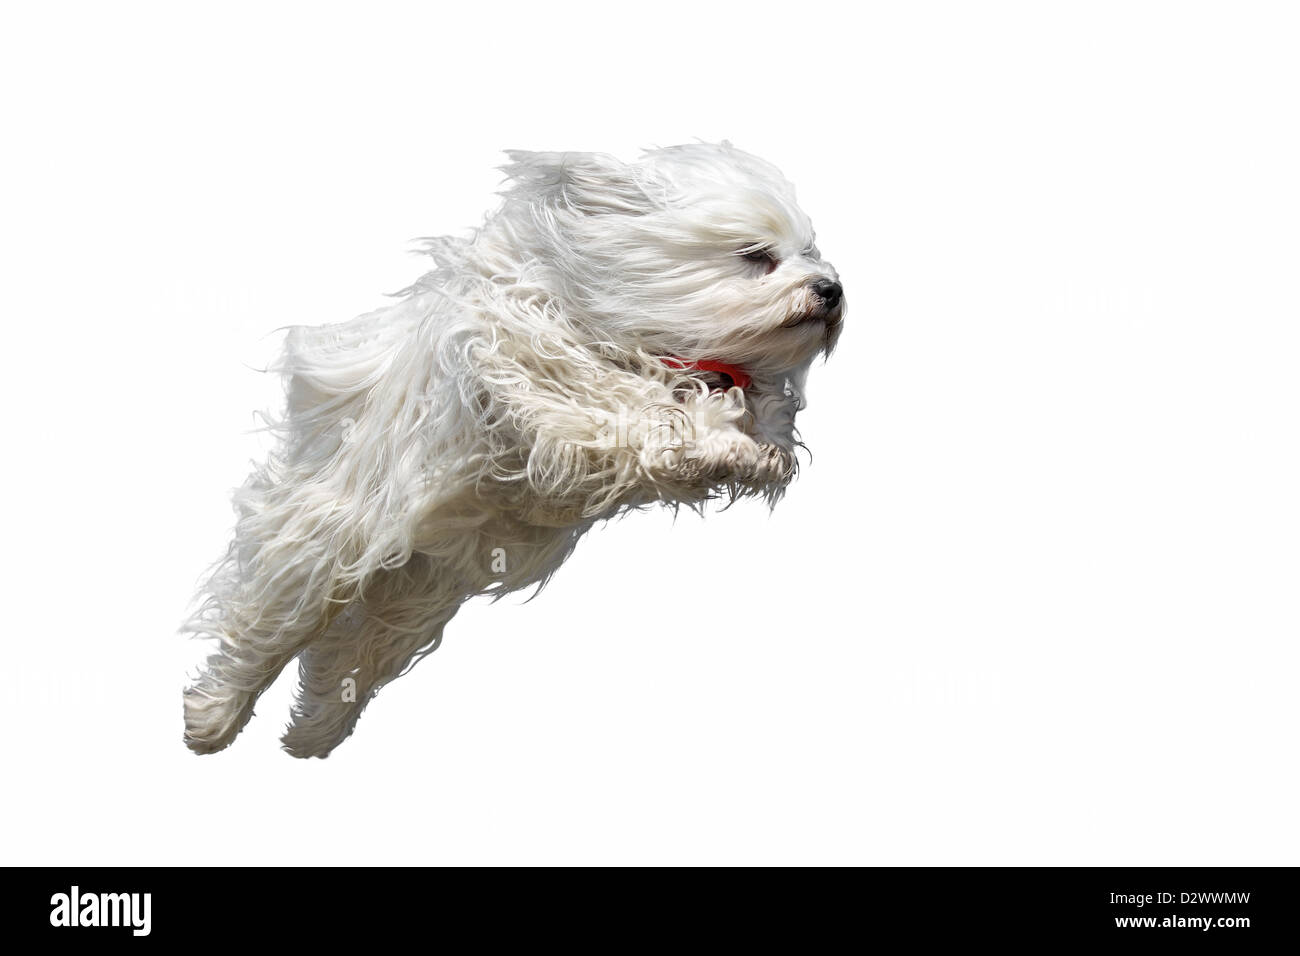 Capelli lunghi bianco razza di cane (Havanese) rettilineo vola con una sciarpa rossa nell'aria. Isolato su sfondo bianco. Foto Stock